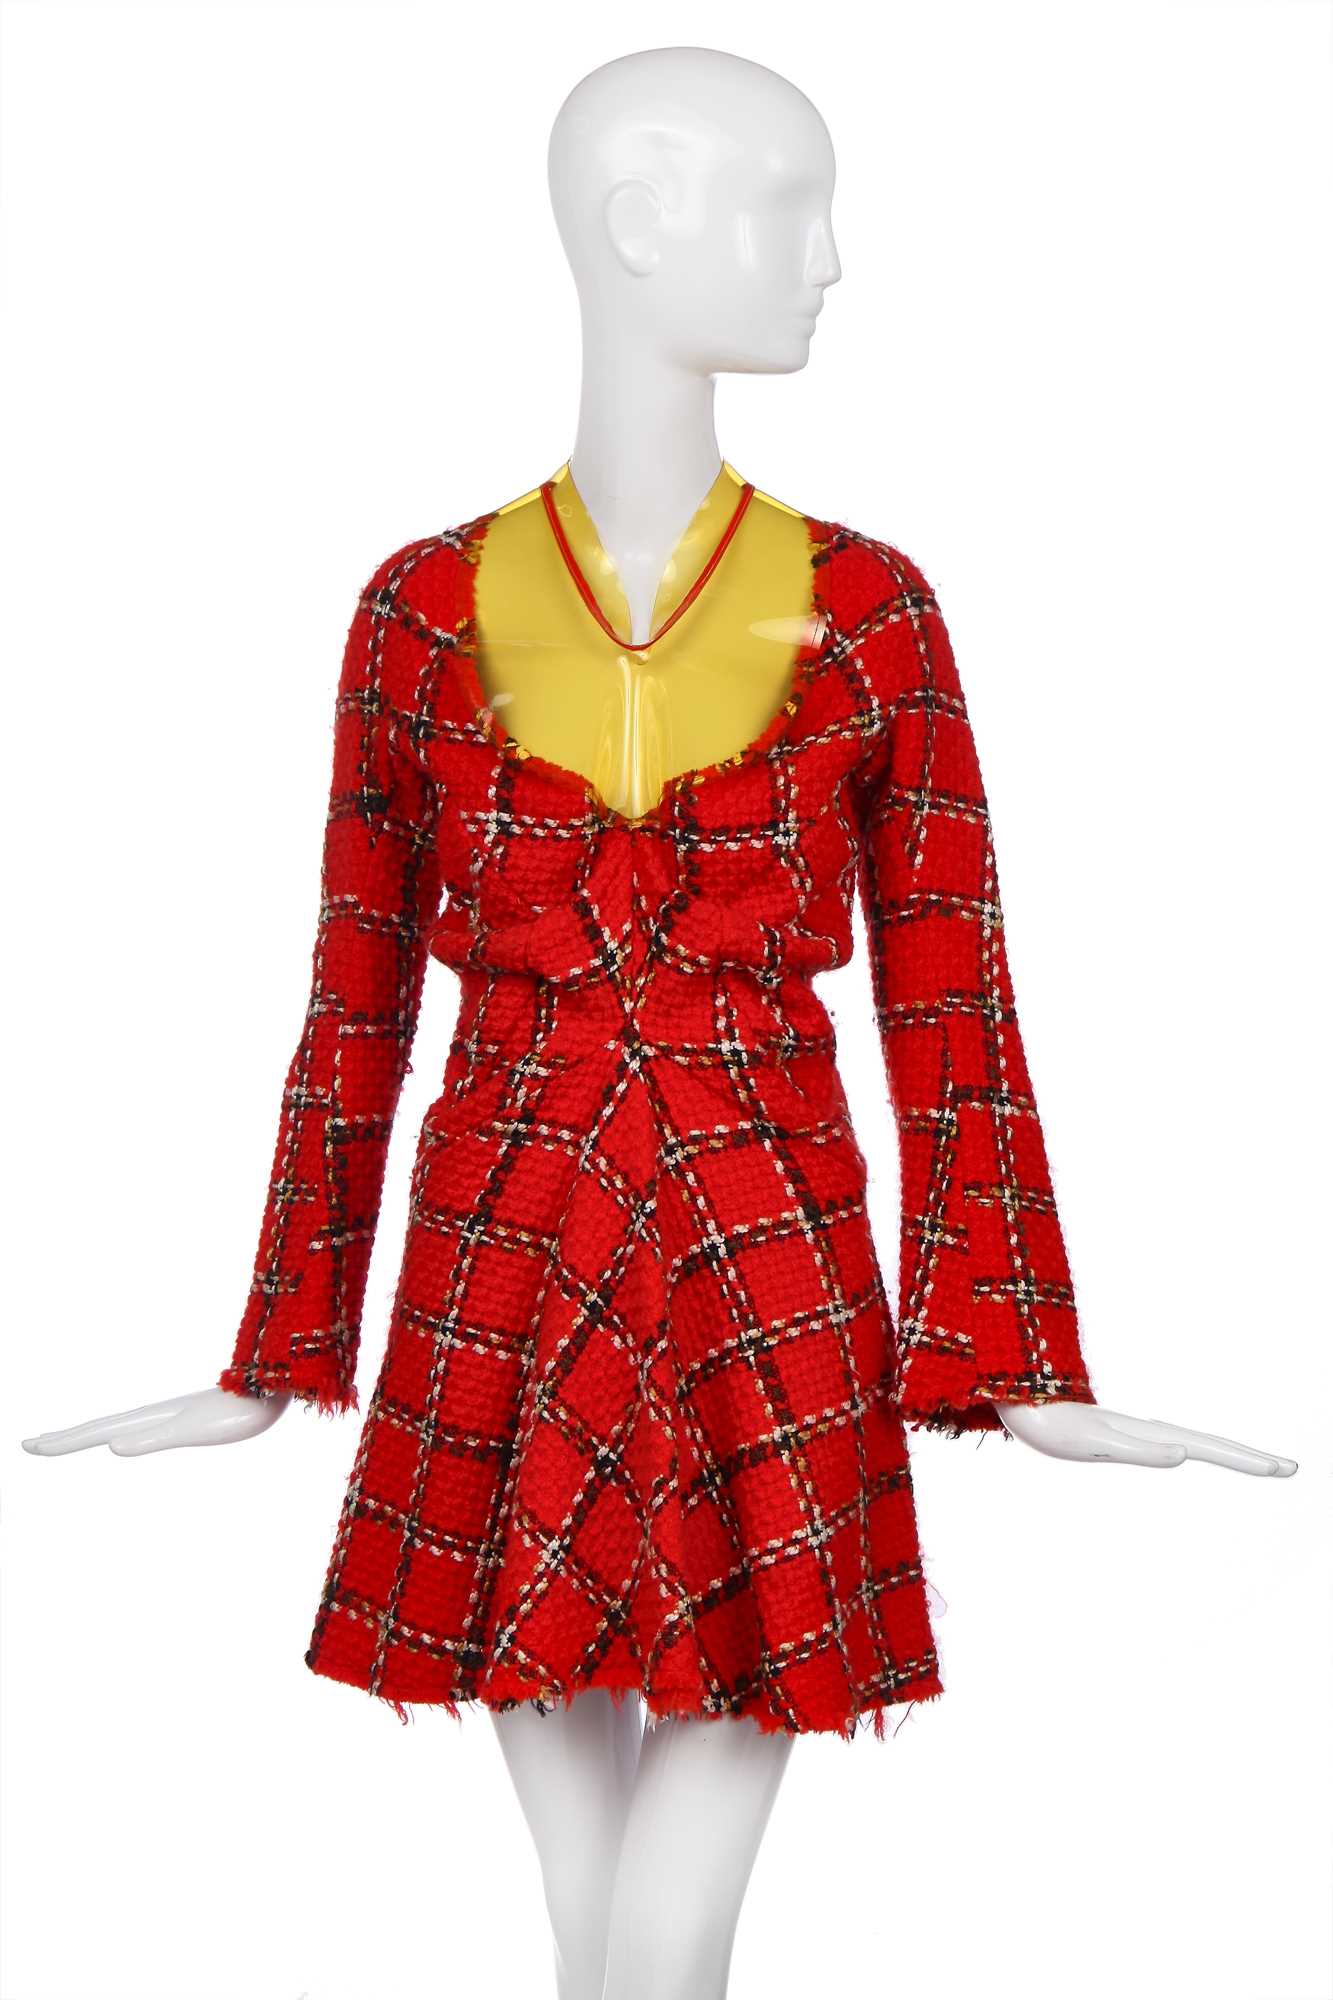 Lot 141 - A Junya Watanabe/Comme des Garçons windowpane check tweed dress, Autumn-Winter 2001-02